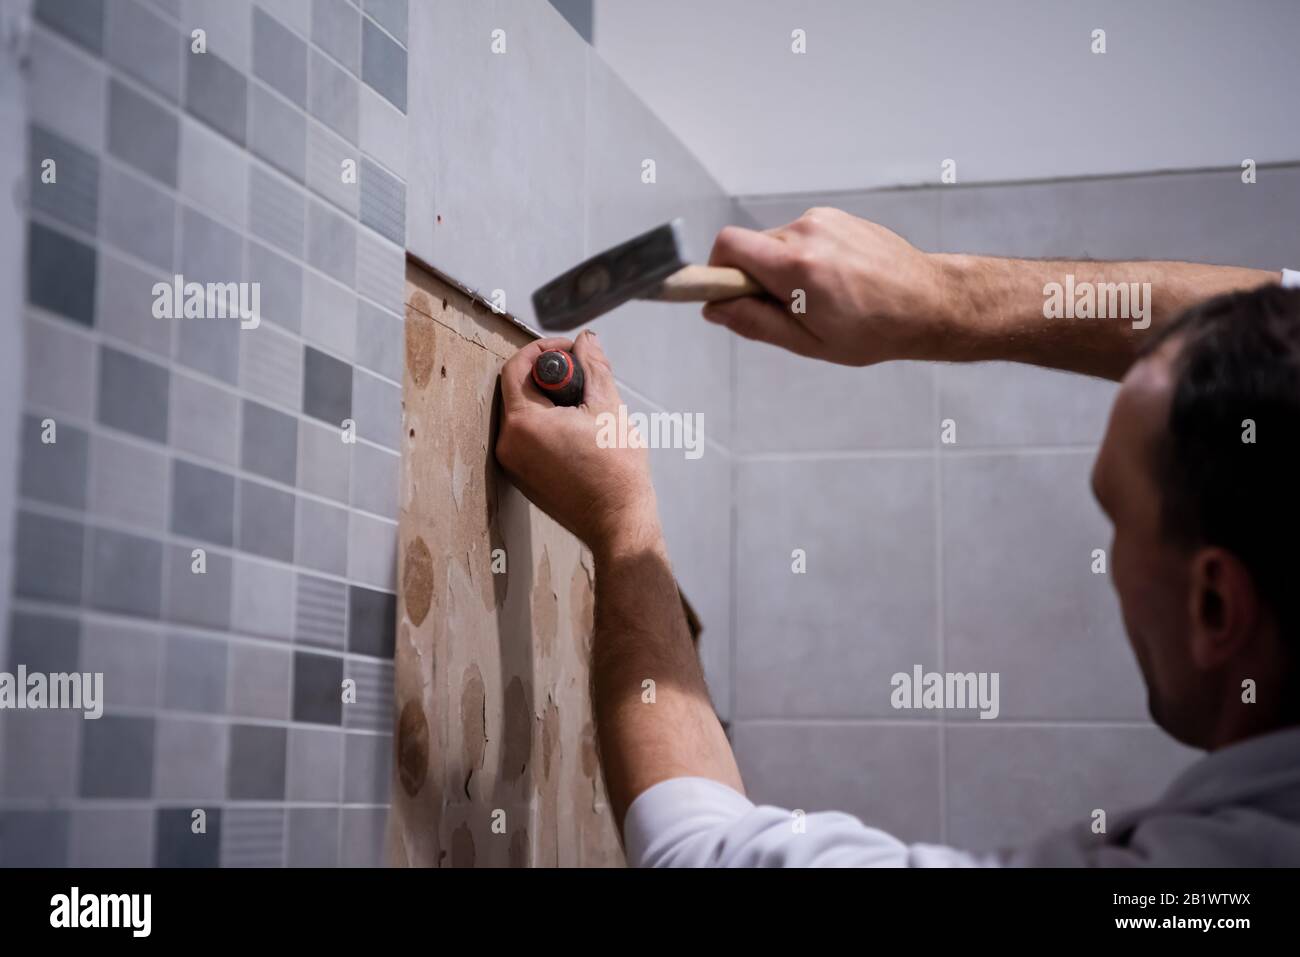 Facharbeiter entfernen in einem Badezimmer mit Hammer und Meißel alte  Fliesen Stockfotografie - Alamy